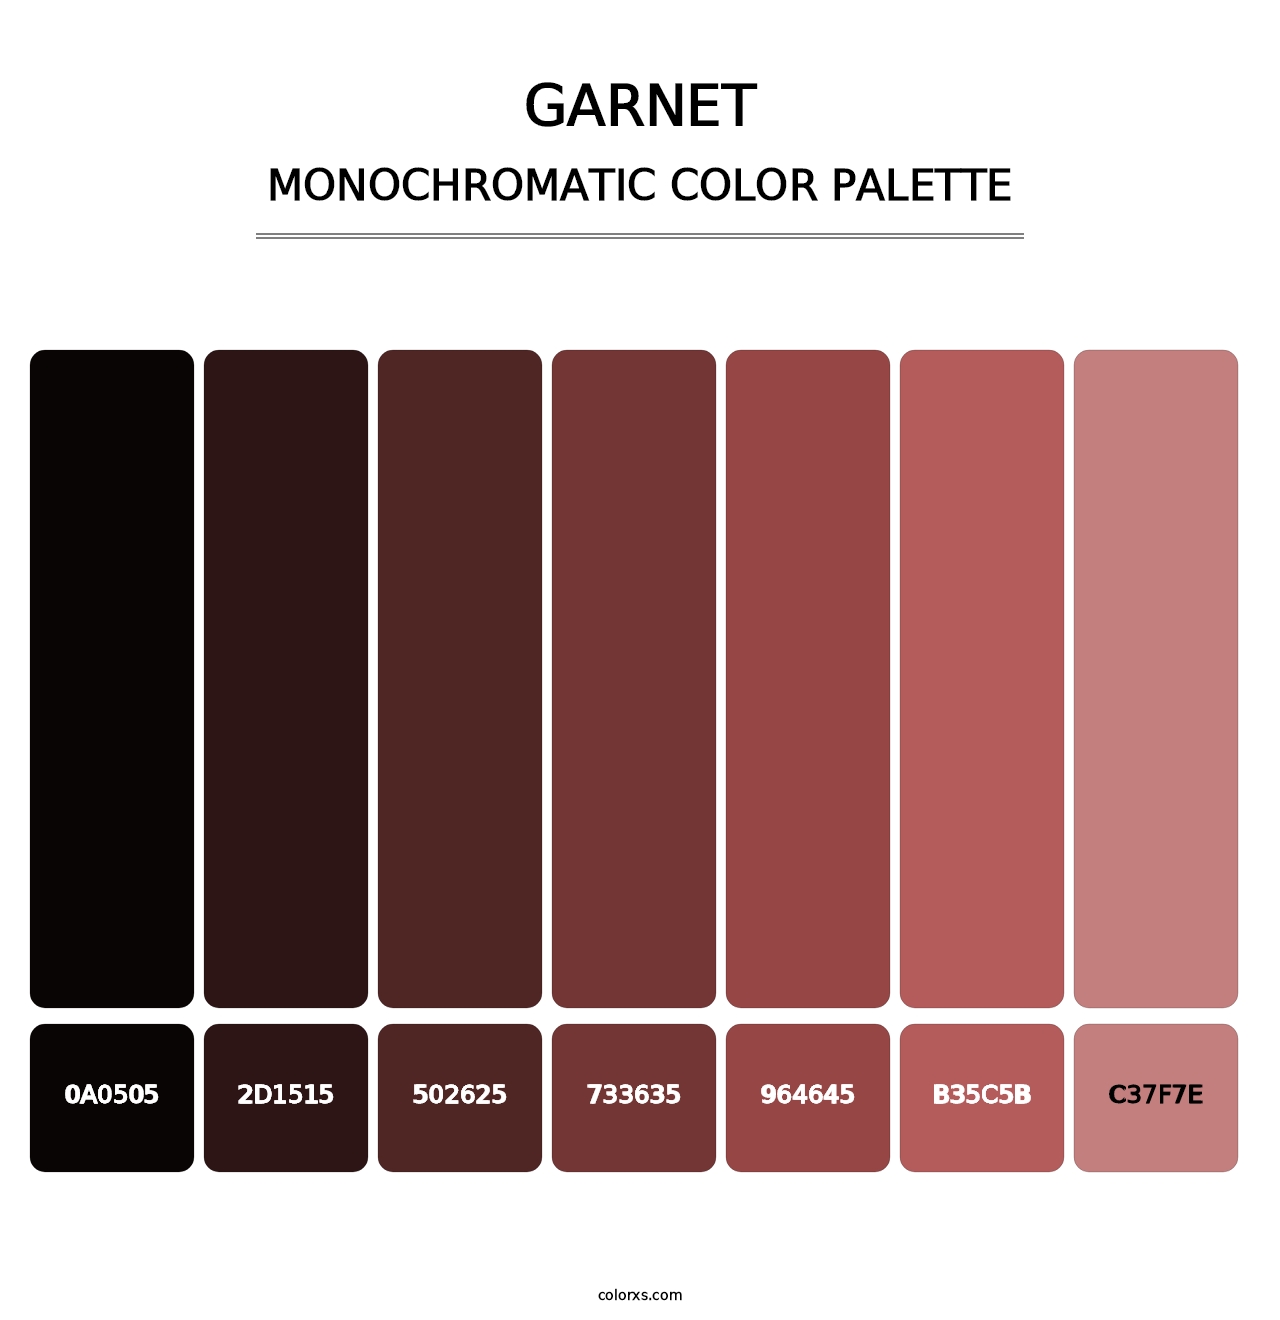 Garnet - Monochromatic Color Palette